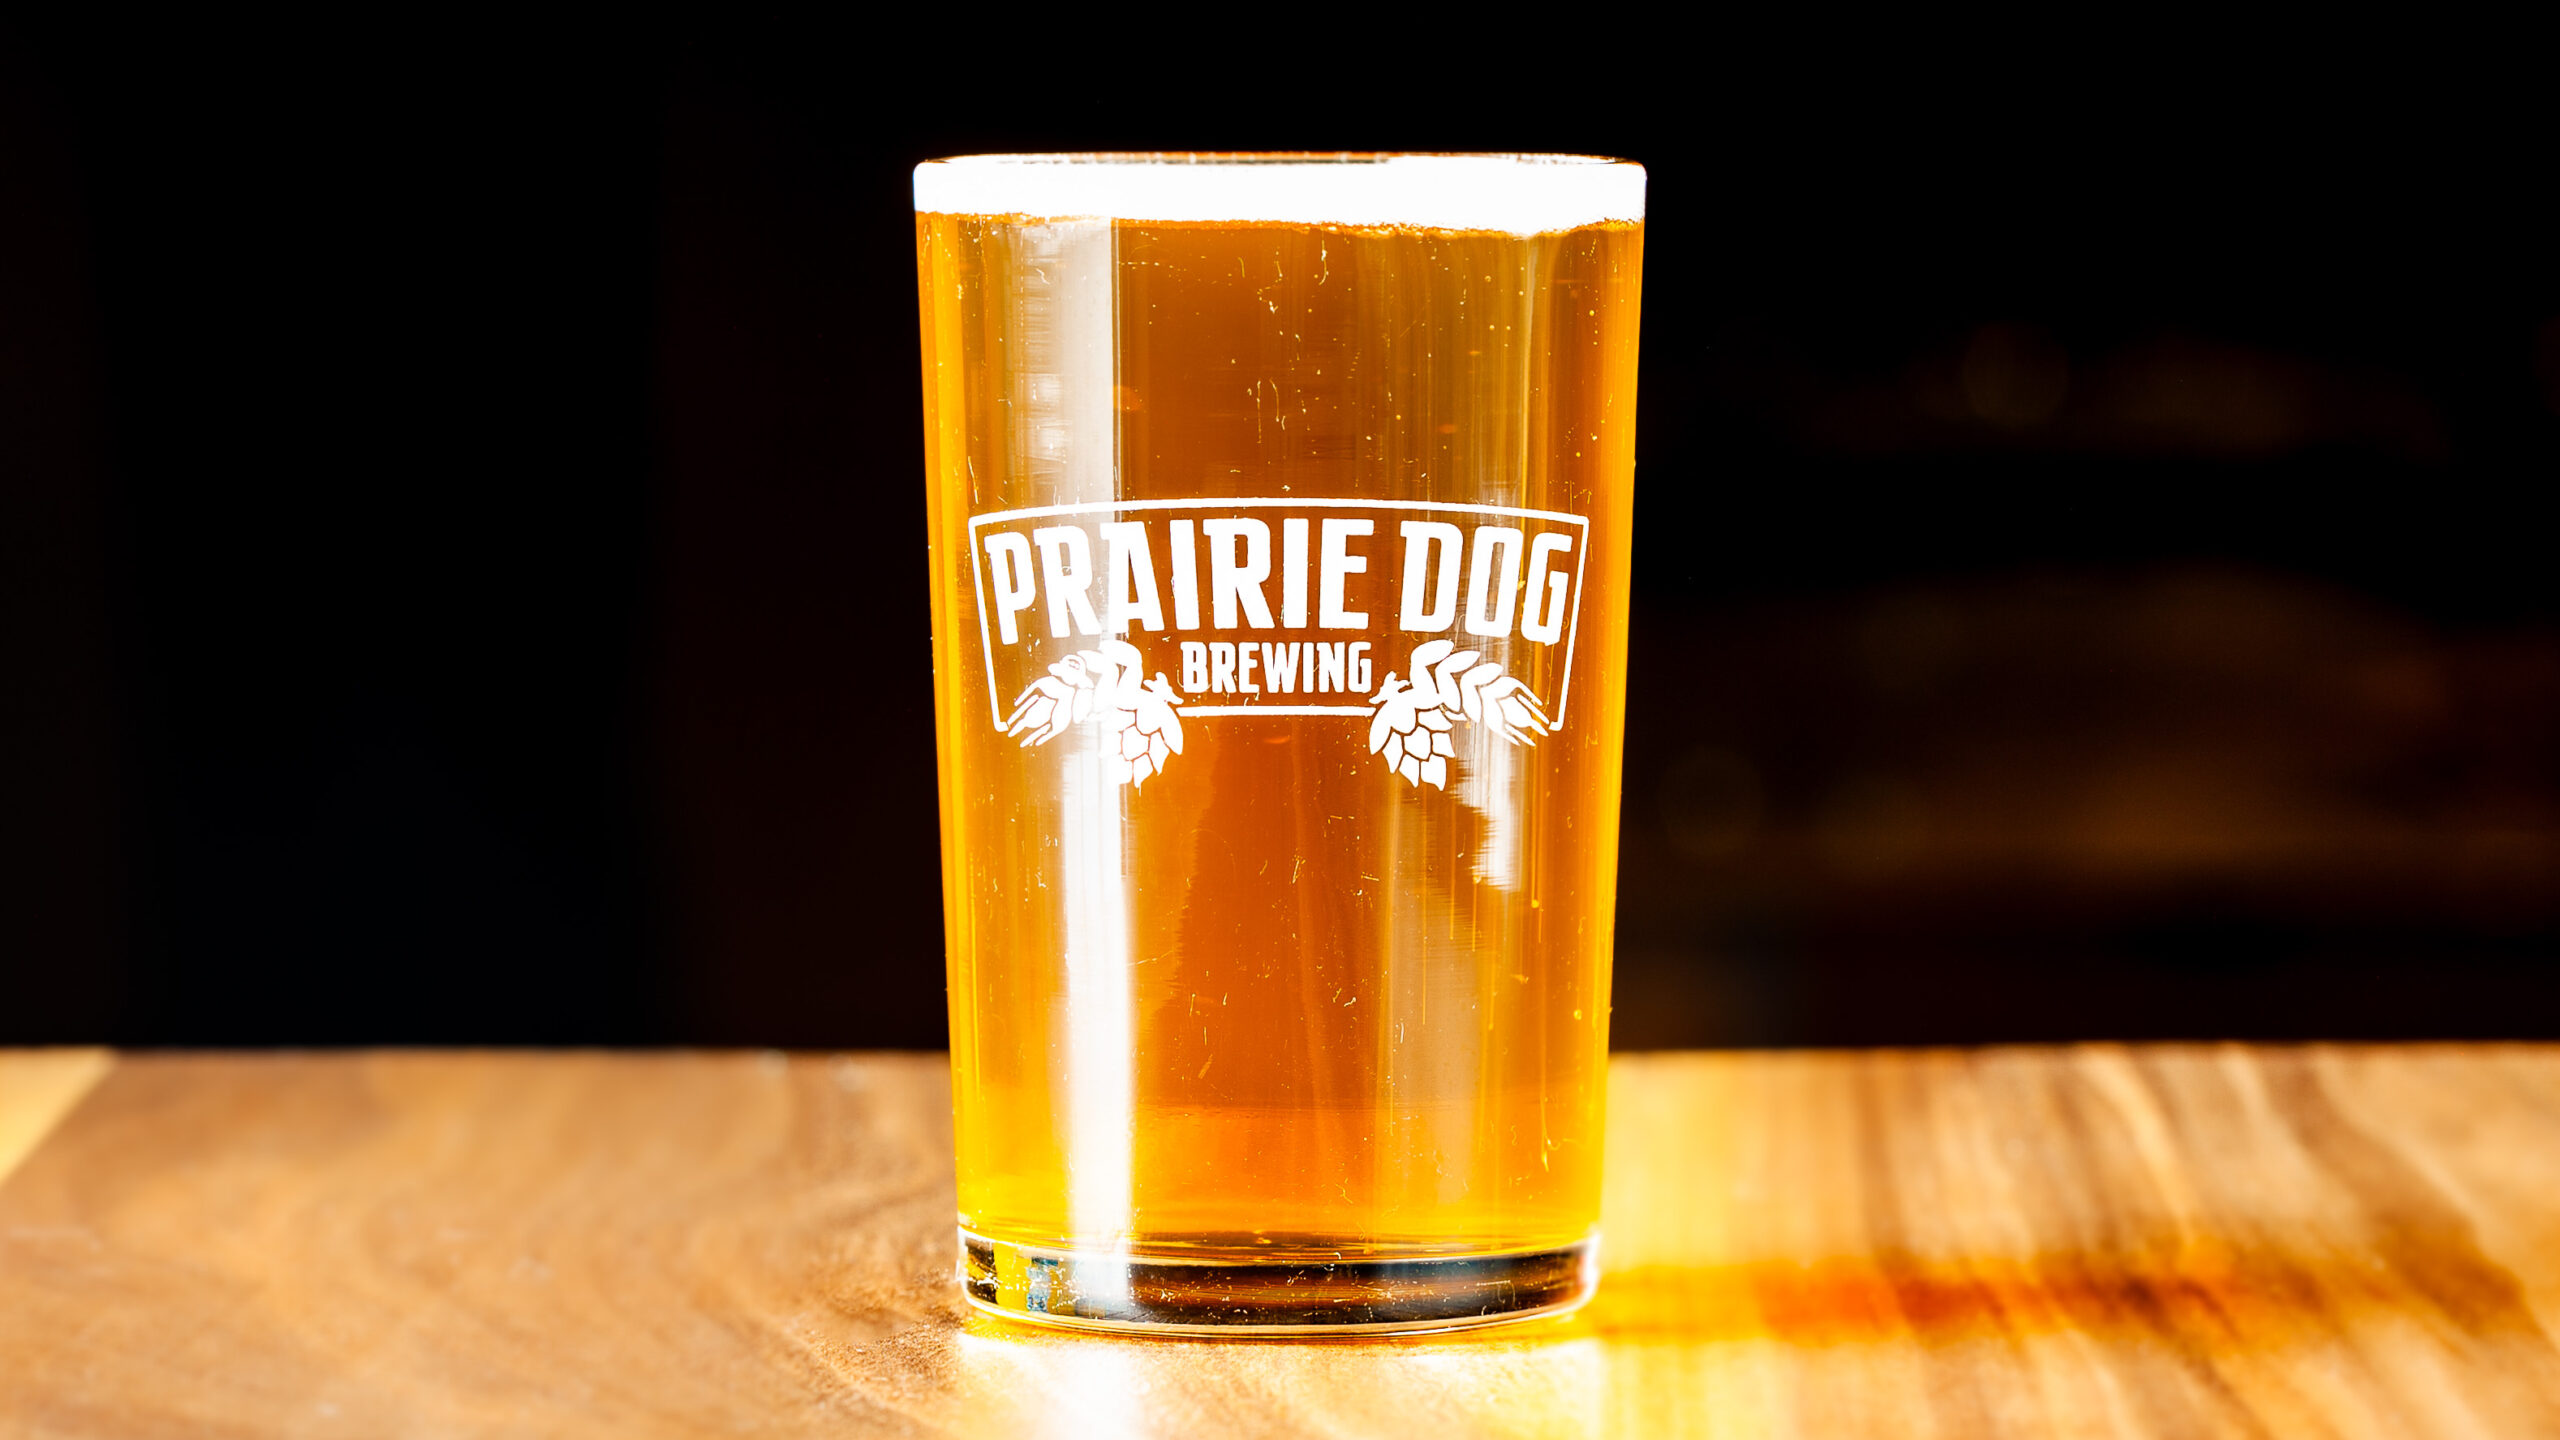 150mL draft pour of Prairie Dog Brewing's Little Bear Kölsch!